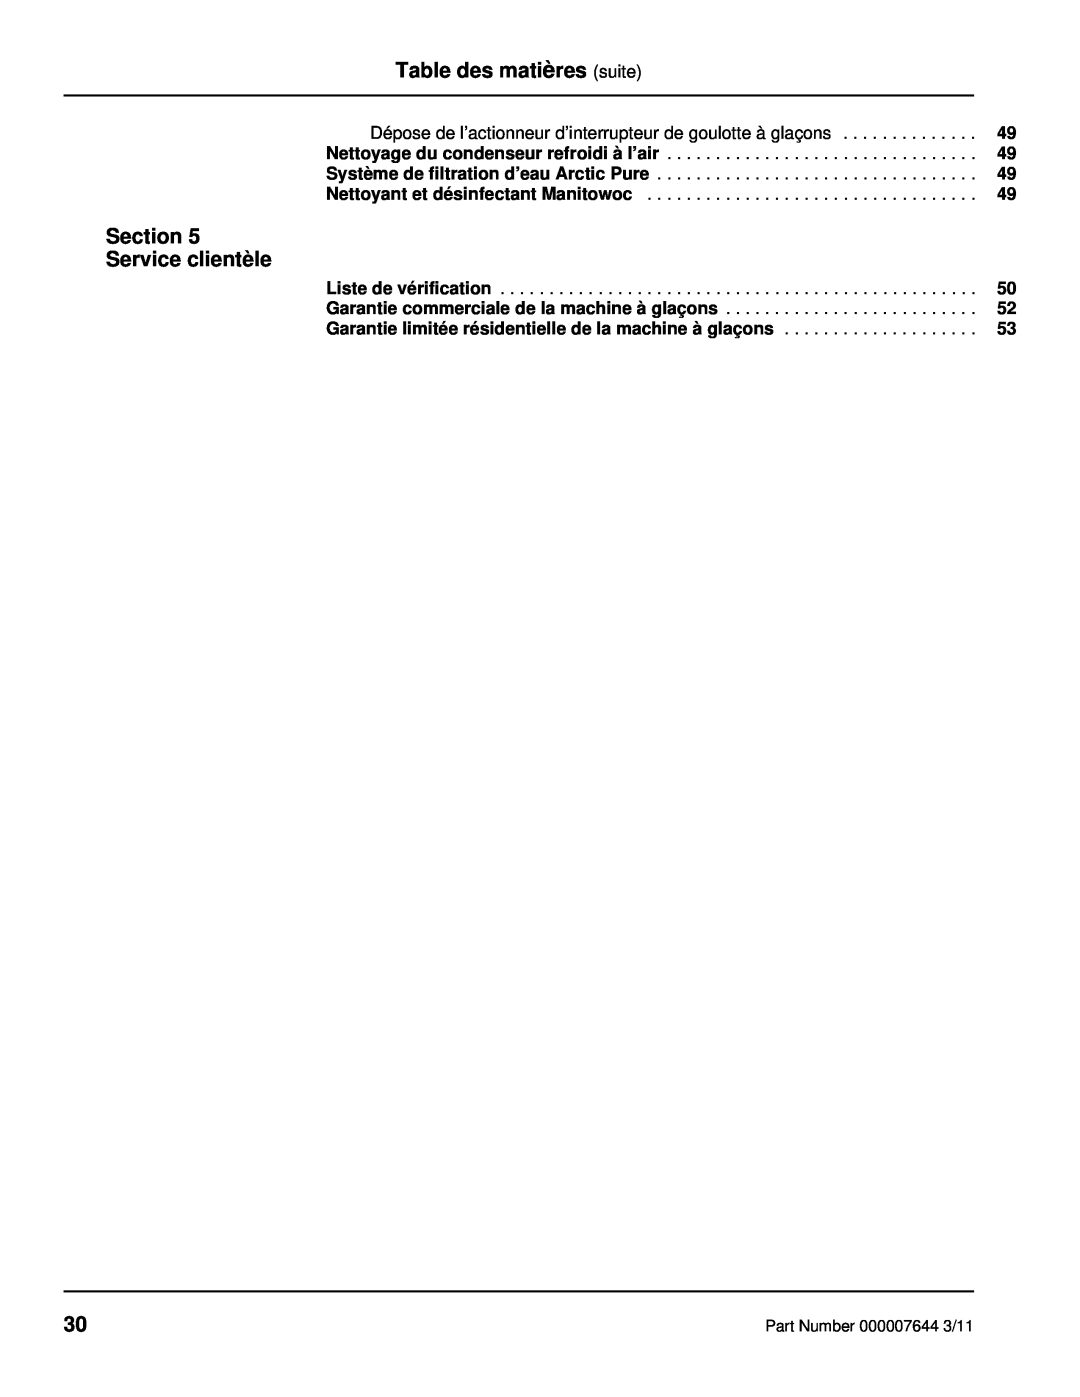 Manitowoc Ice RF manual Table des matières suite, Section Service clientèle 